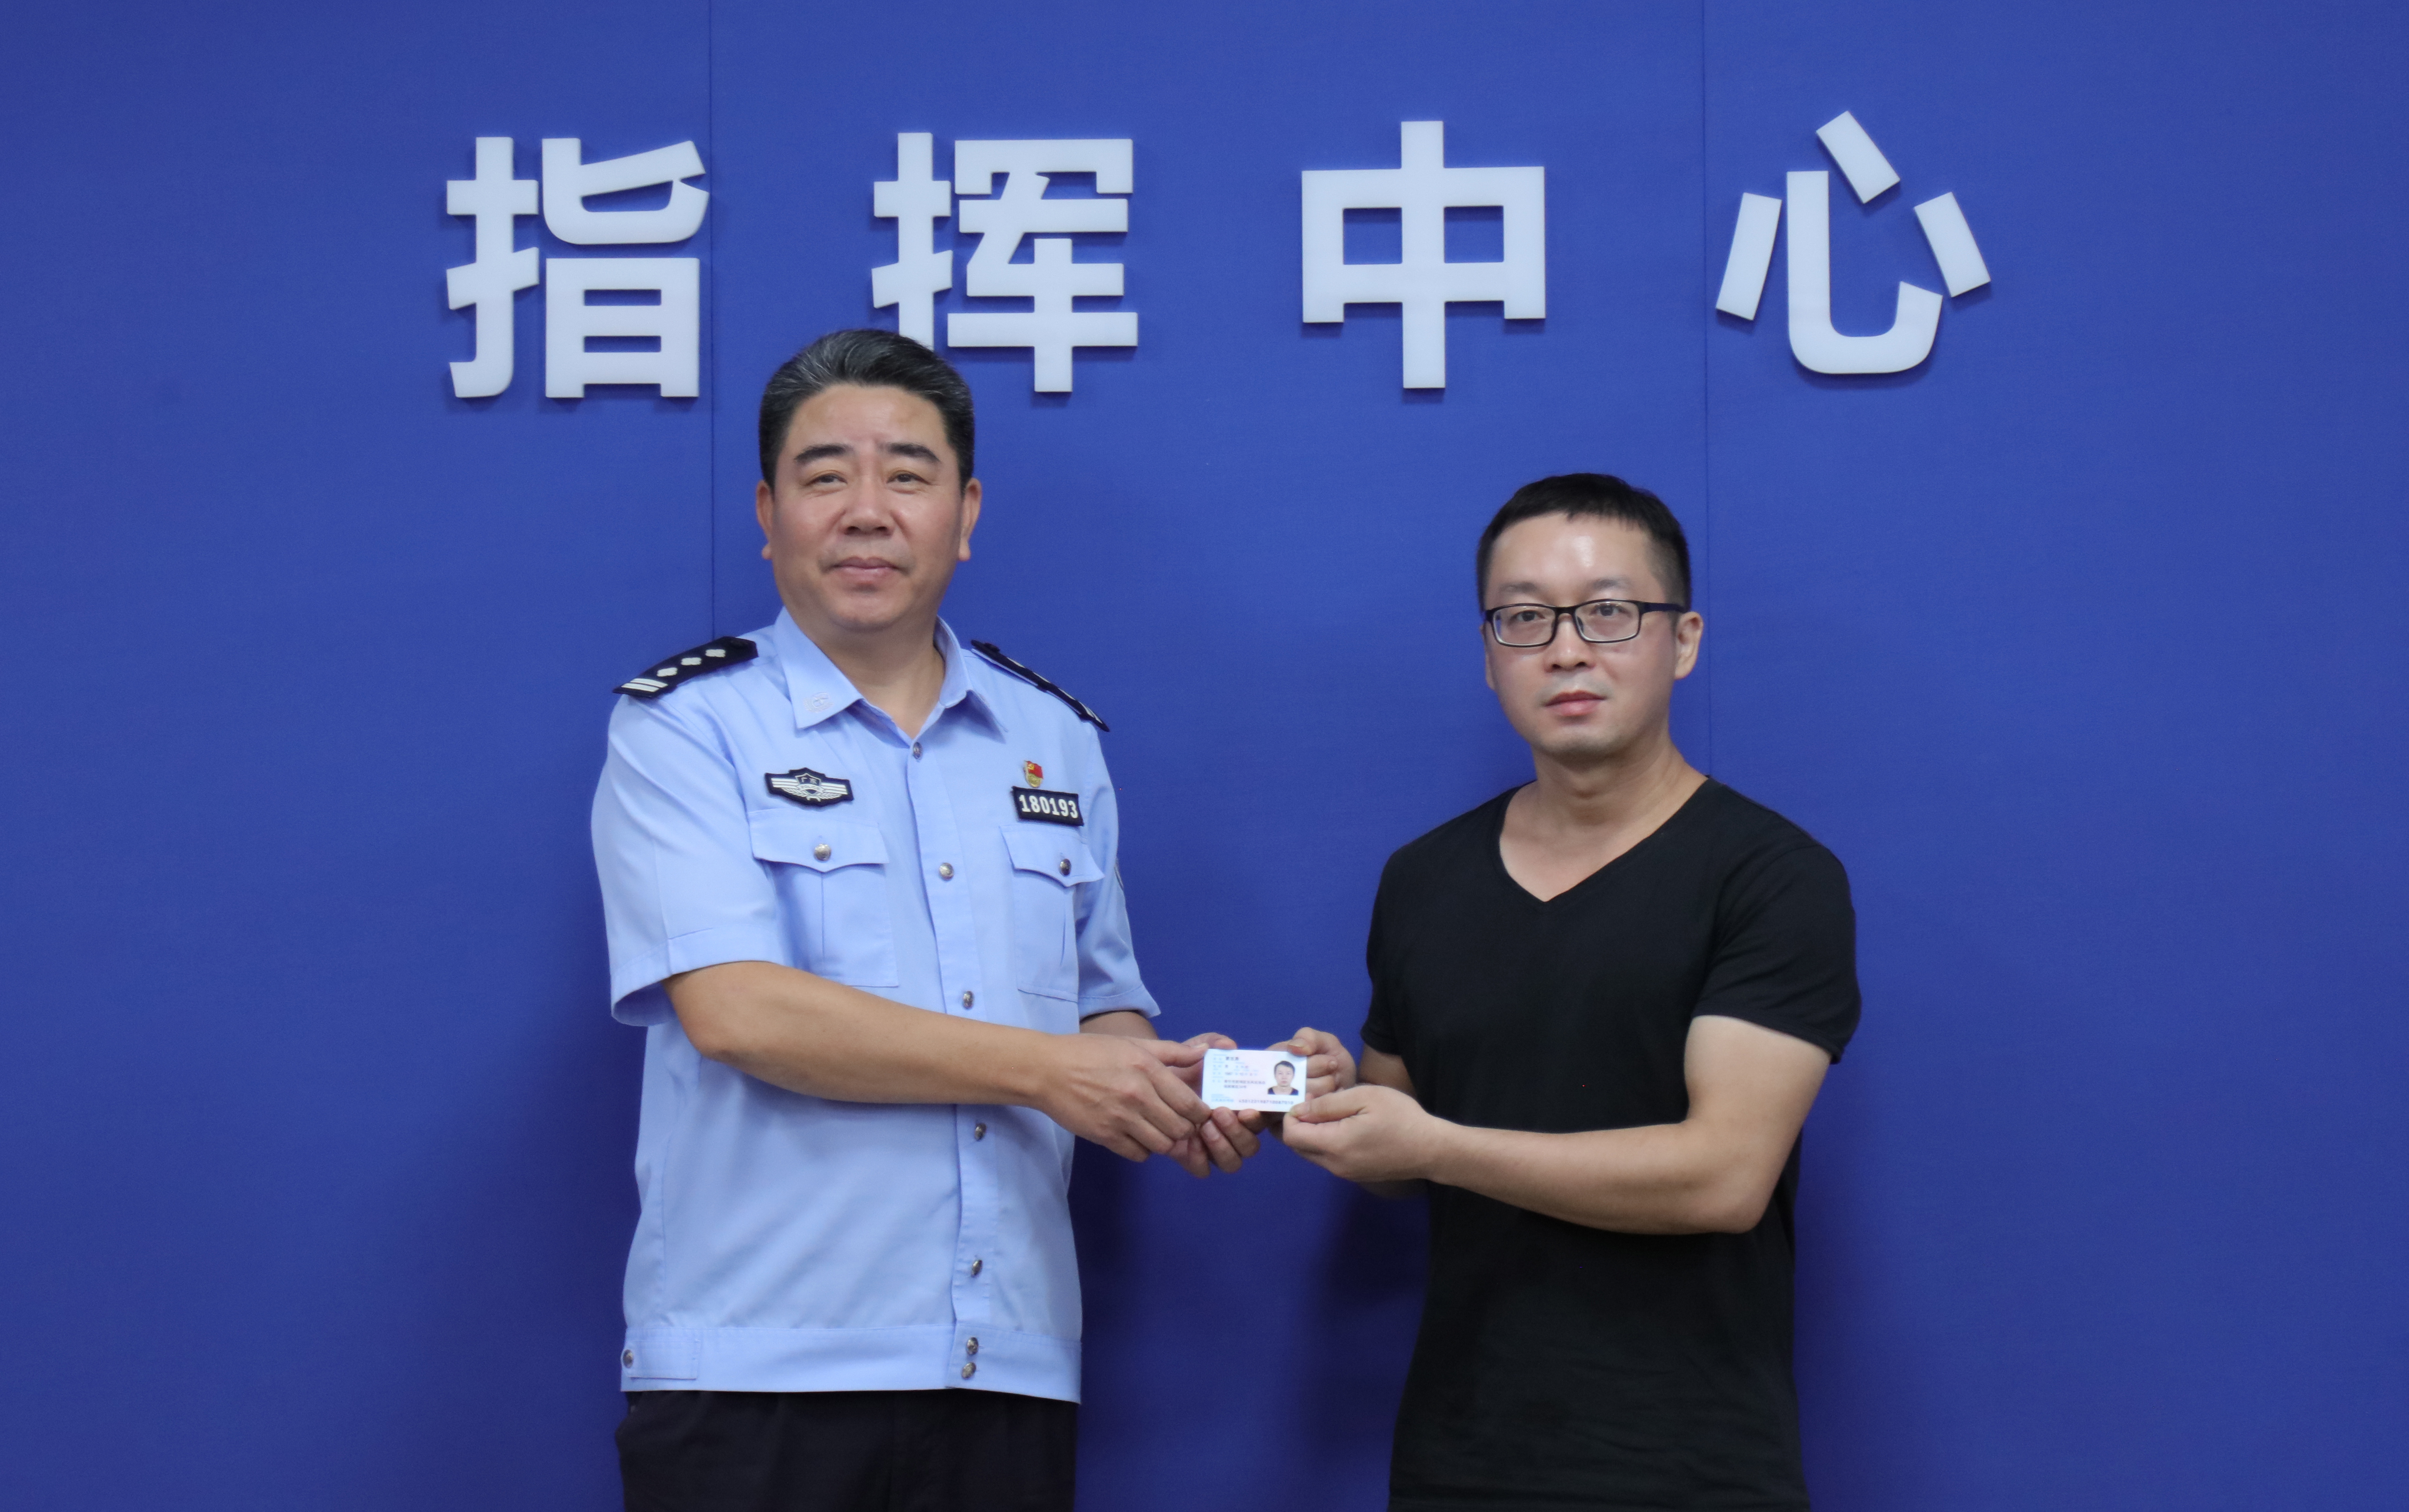 蒙志勇从广东佛山公安民警的手中接过自己崭新的身份证。